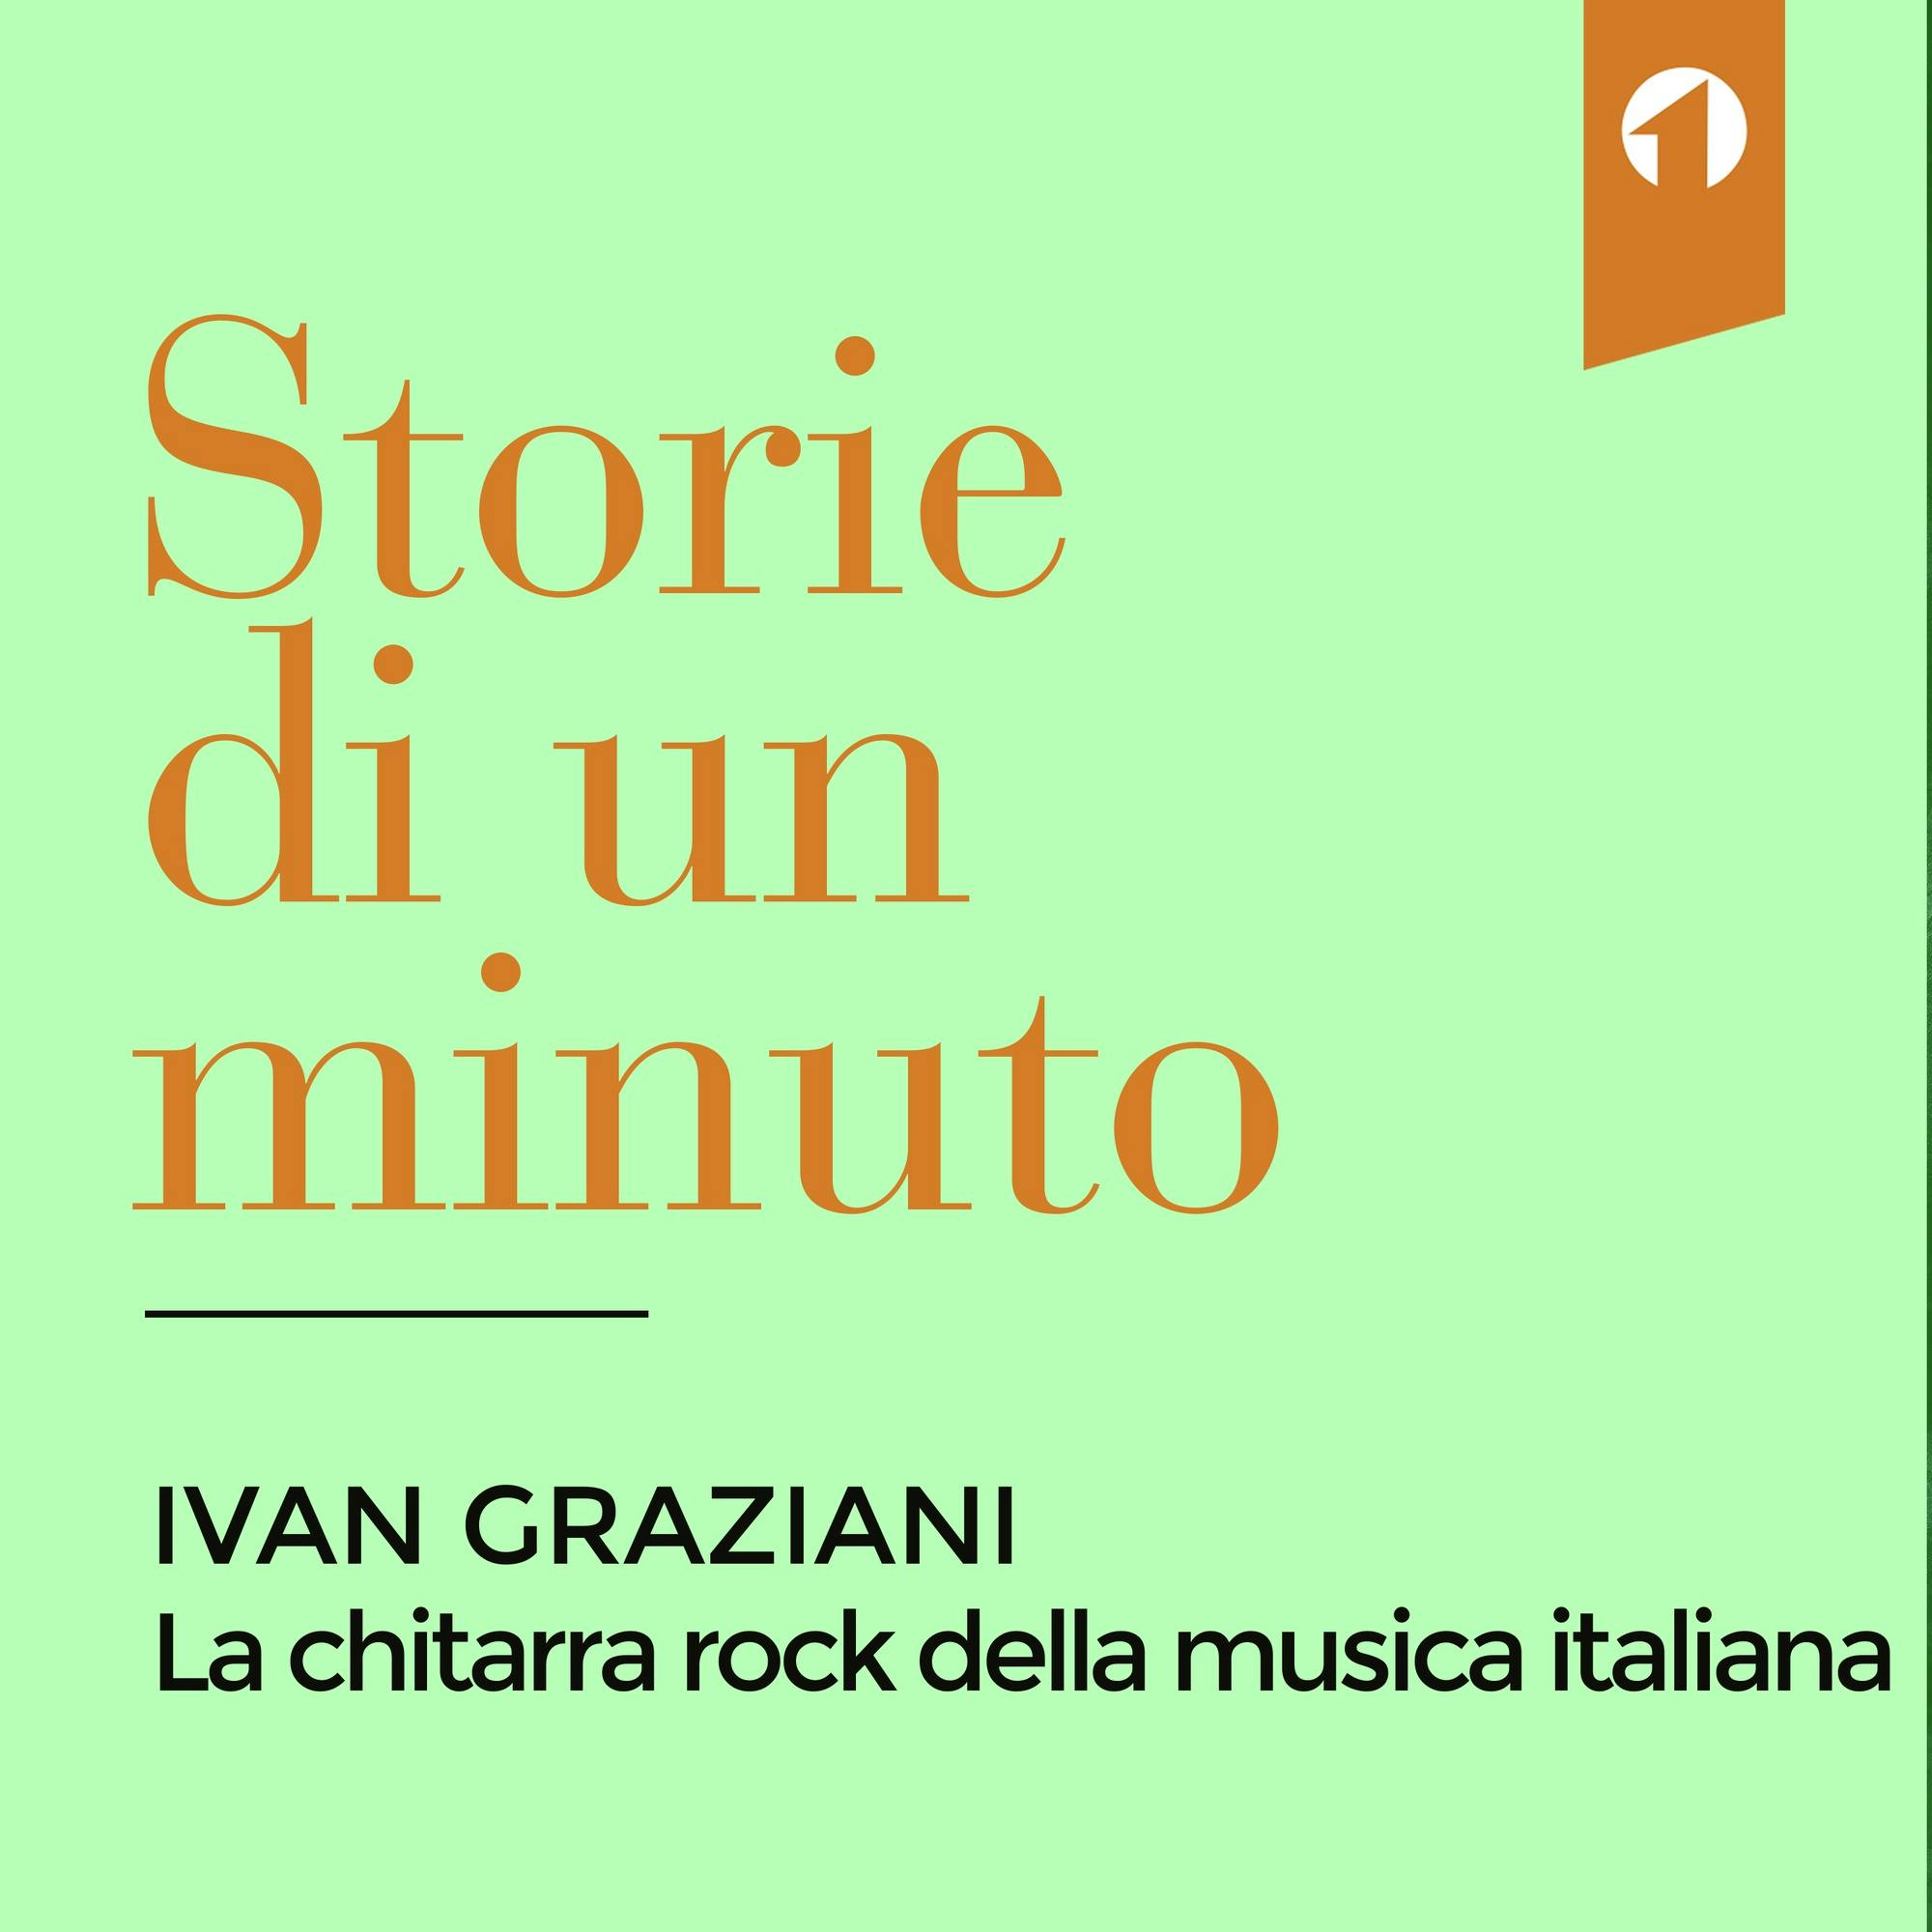 Ivan Graziani, la chitarra rock della musica italiana